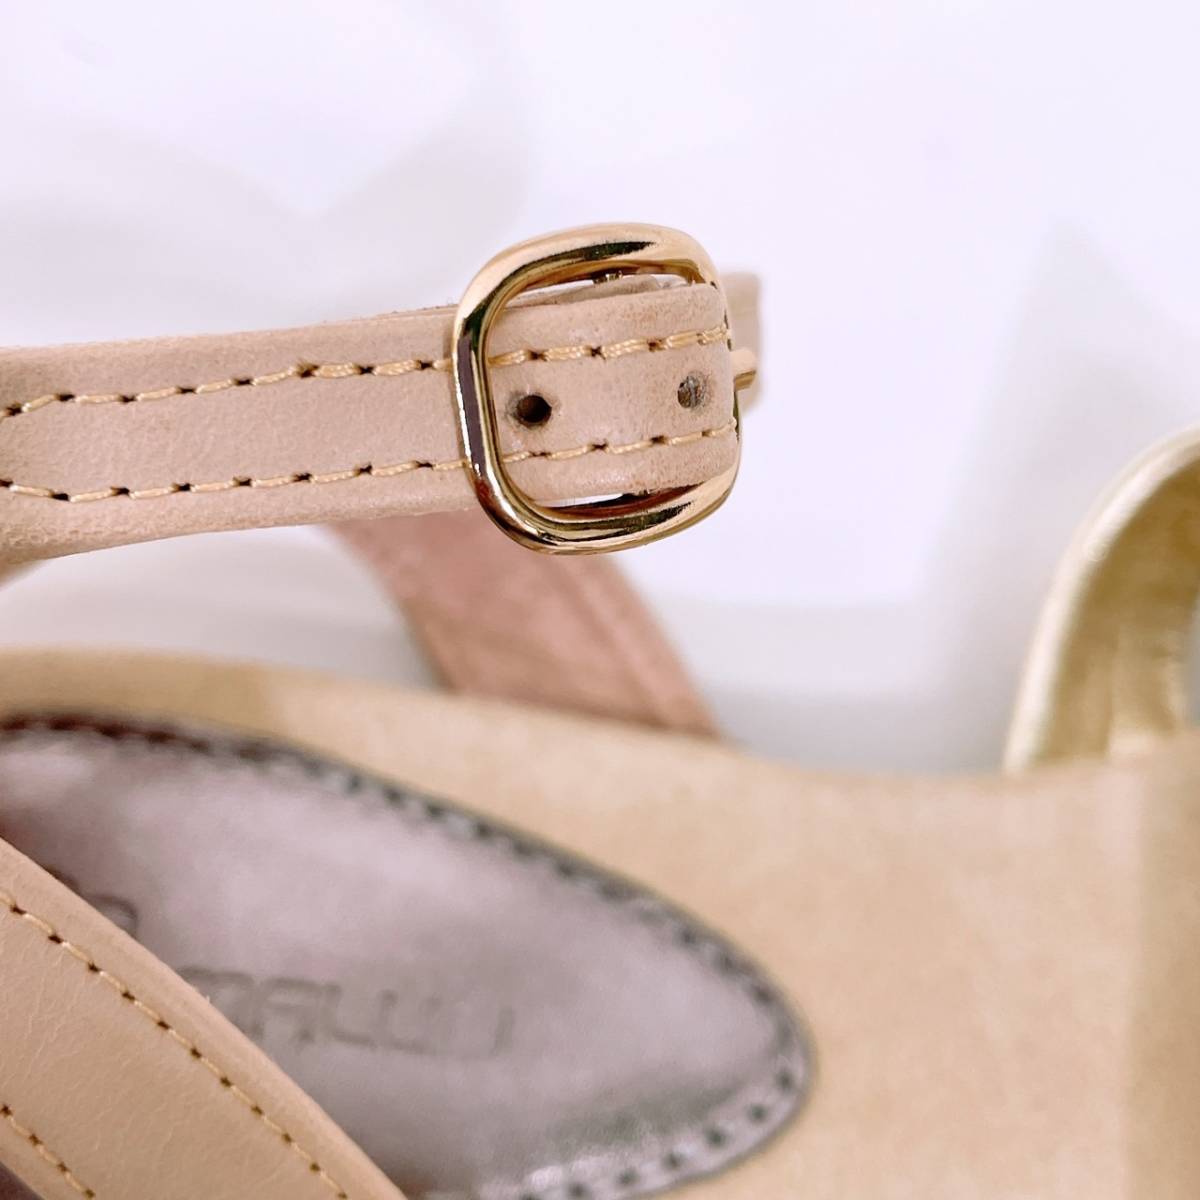 新古品 未使用 レディース 24cm MALUO ファッション 小物 靴 シューズ サンダル ピンクベージュ ストラップ調整 可愛い マルオ 【22307】